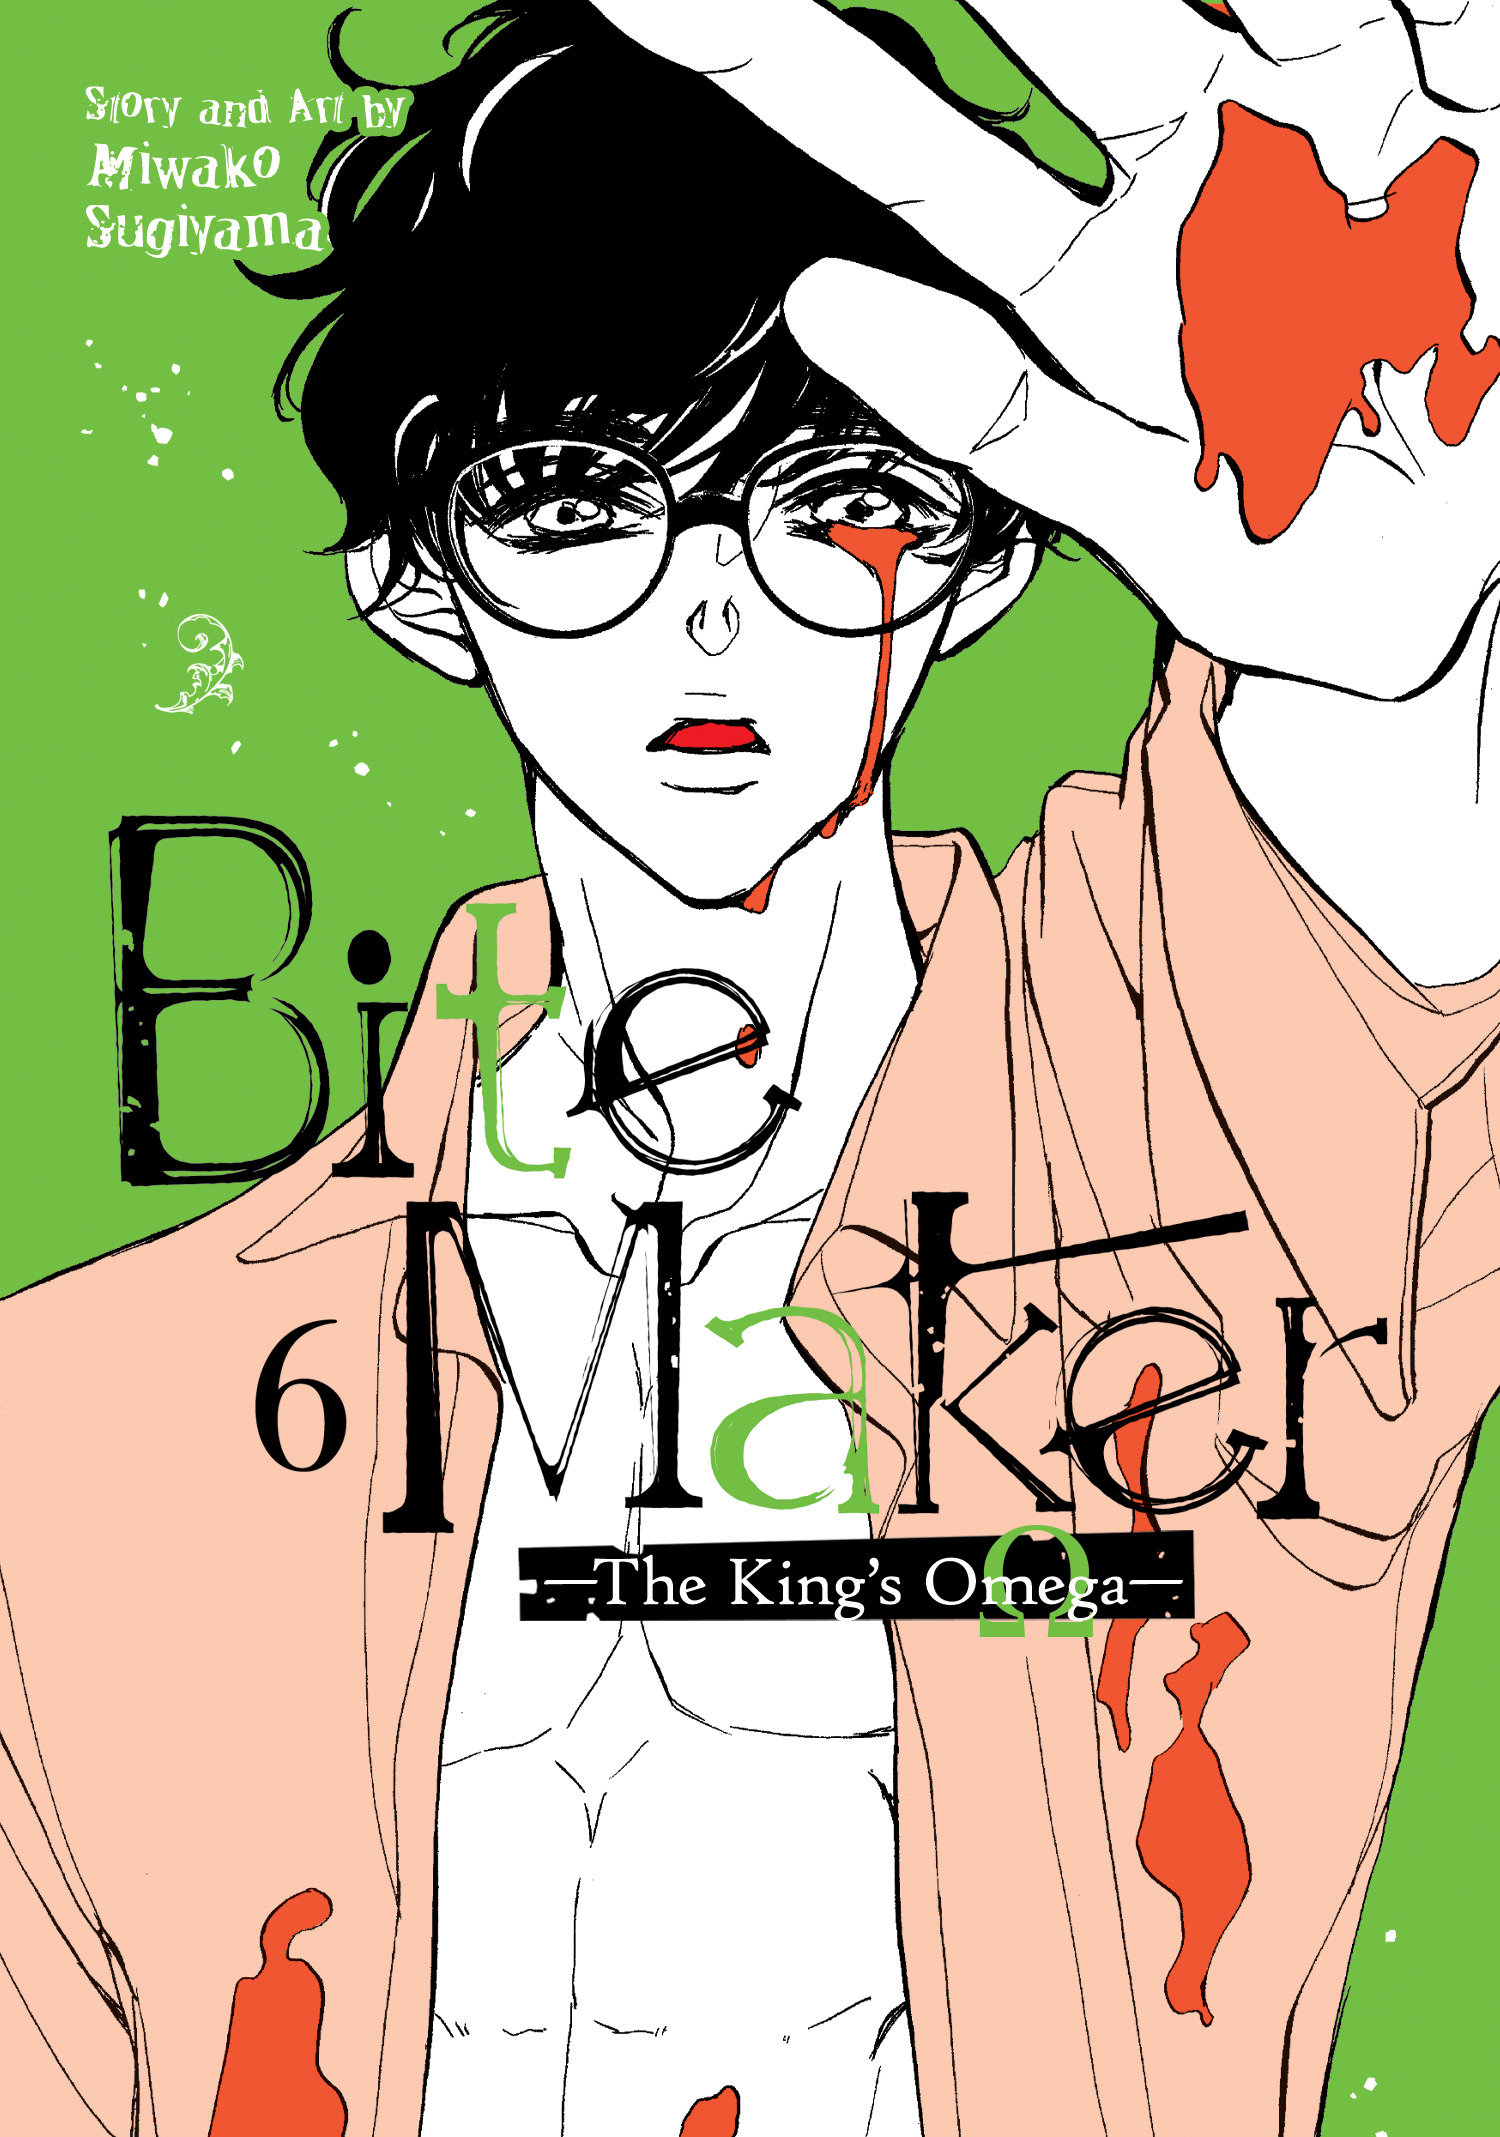 Bite Maker Kings Omega Manga Volume 6 (Mature)